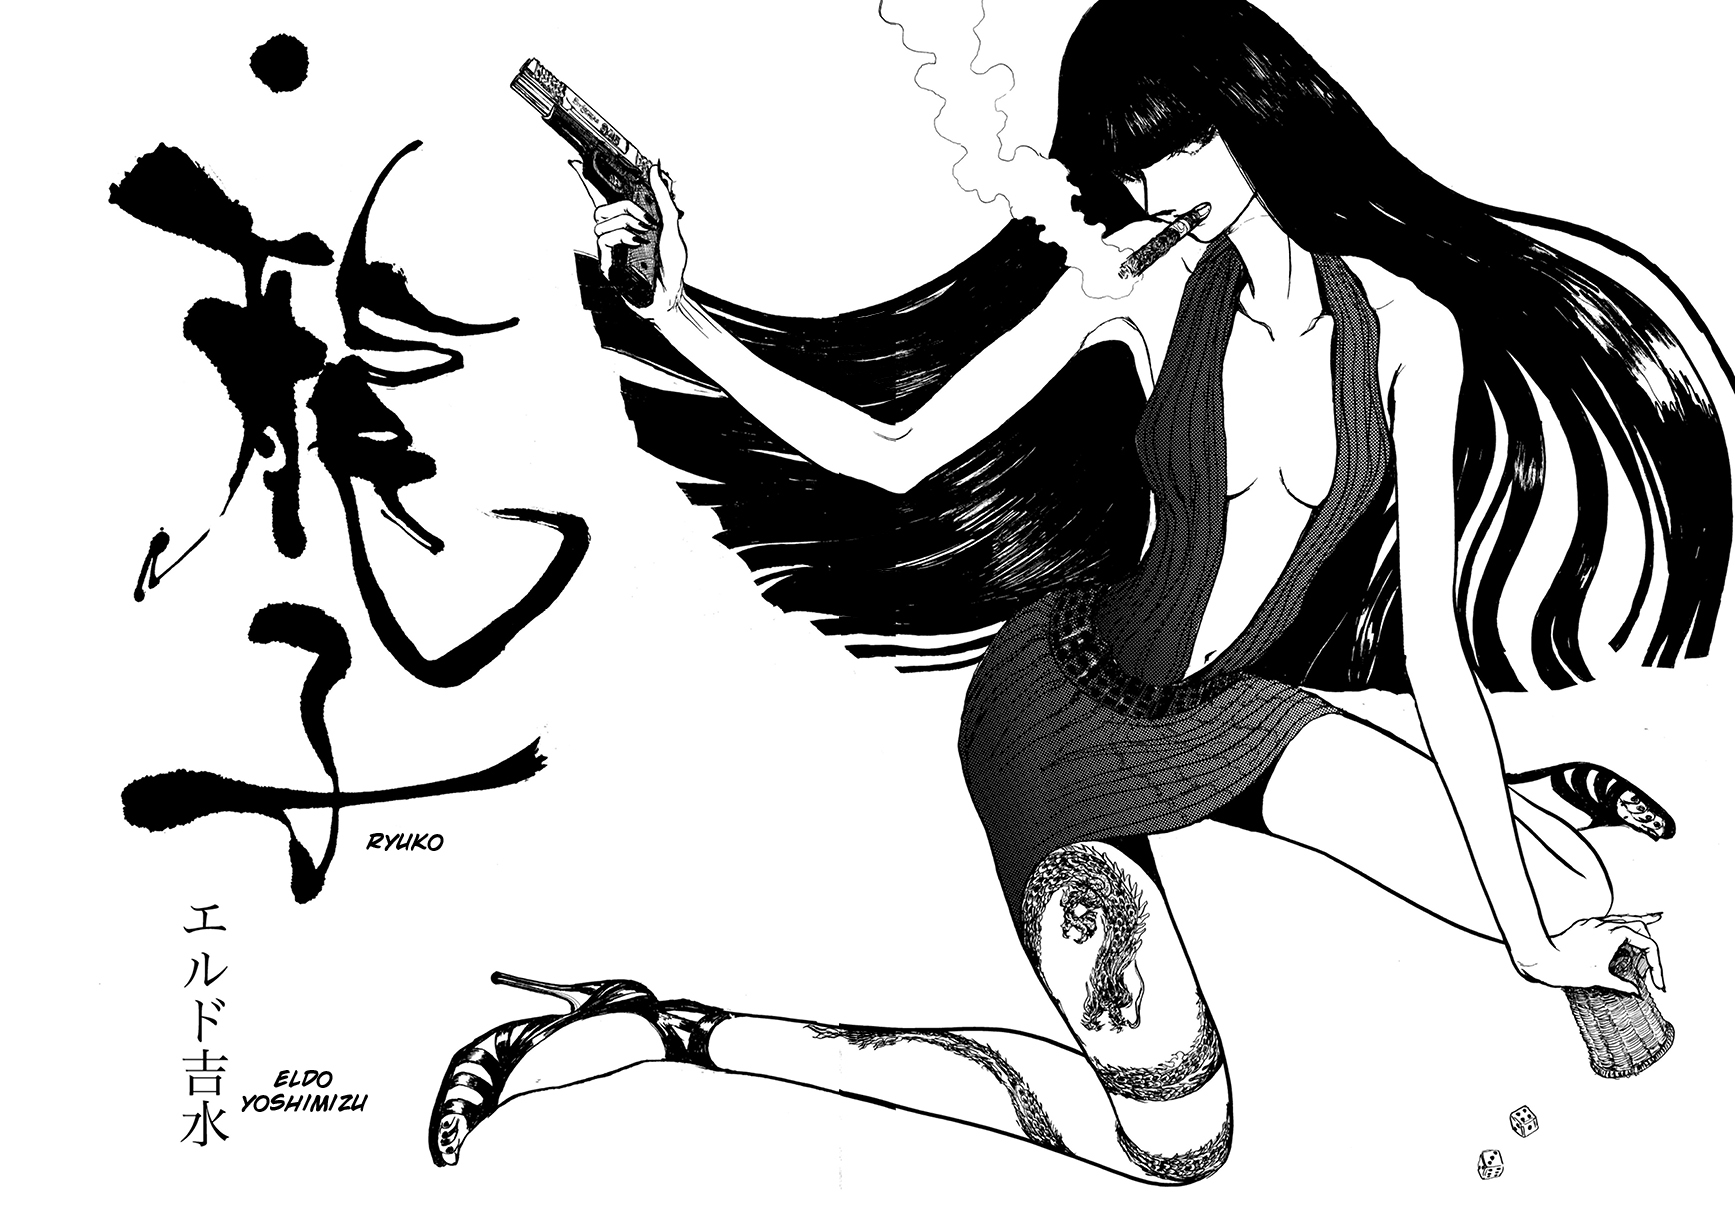 Ryuko, vol 1